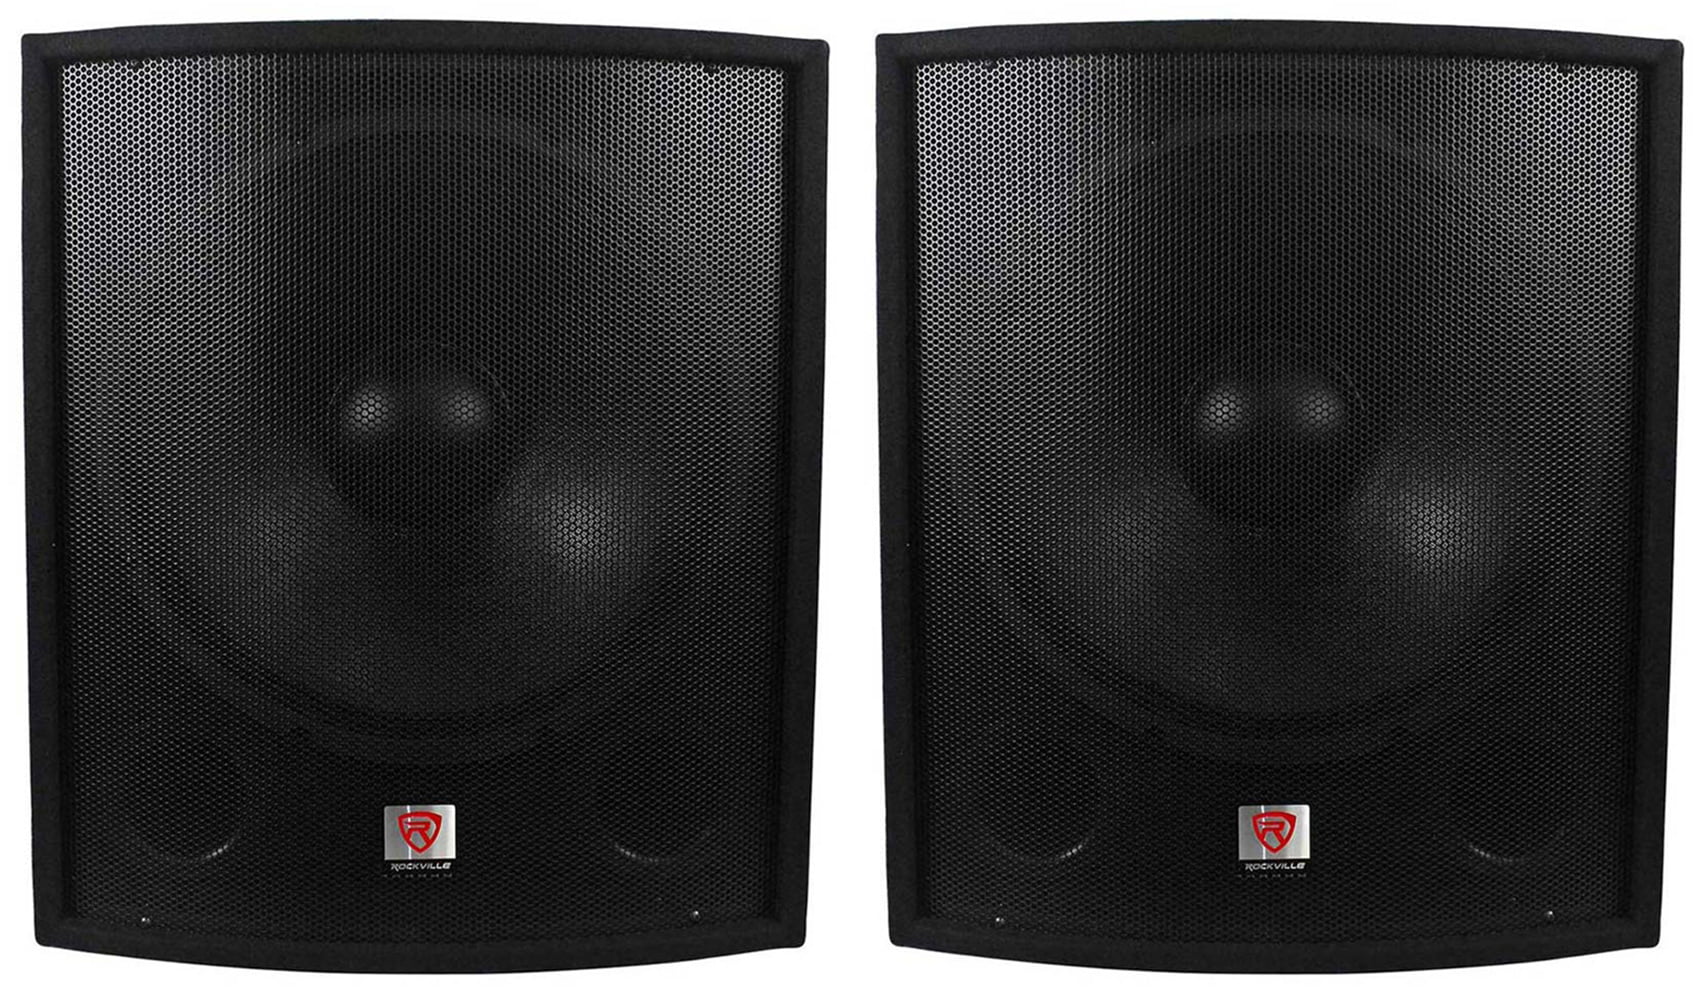 (2) New Rockville SBG1188 18" 2000 Watt Passive Pro DJ Subwoofers Subs